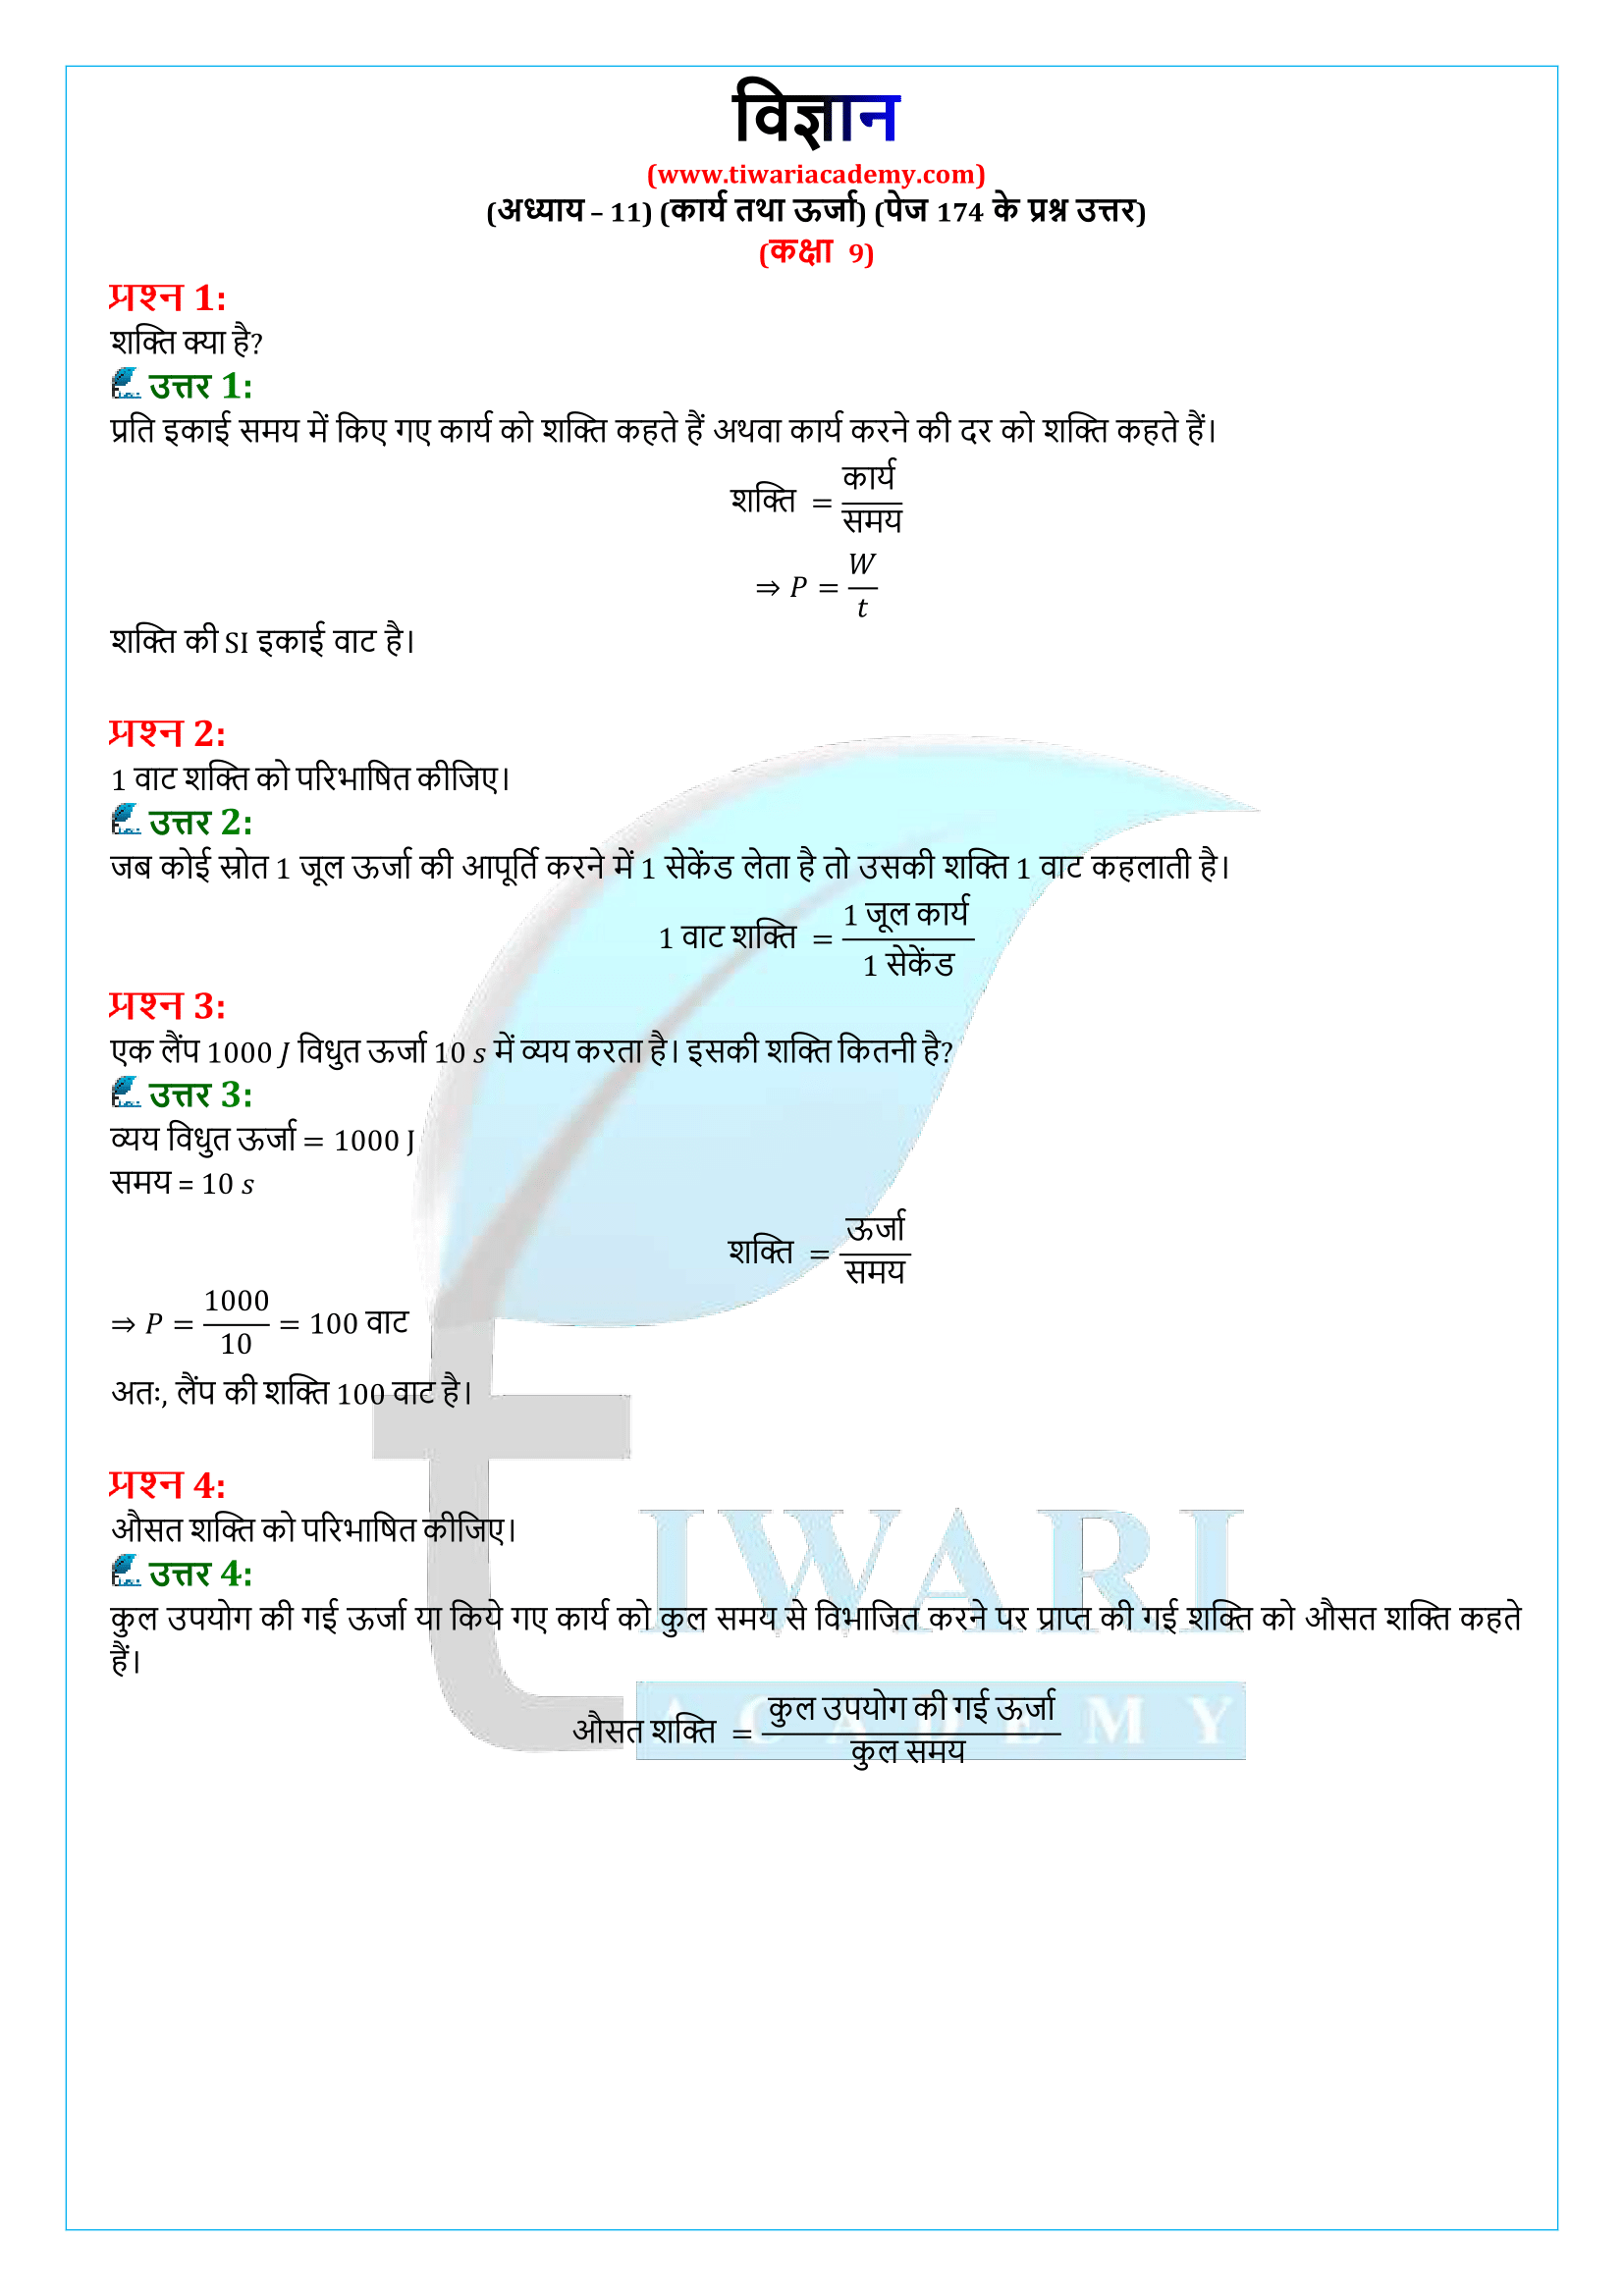 कक्षा 9 विज्ञान अध्याय 11 पेज 174 के प्रश्न उत्तर